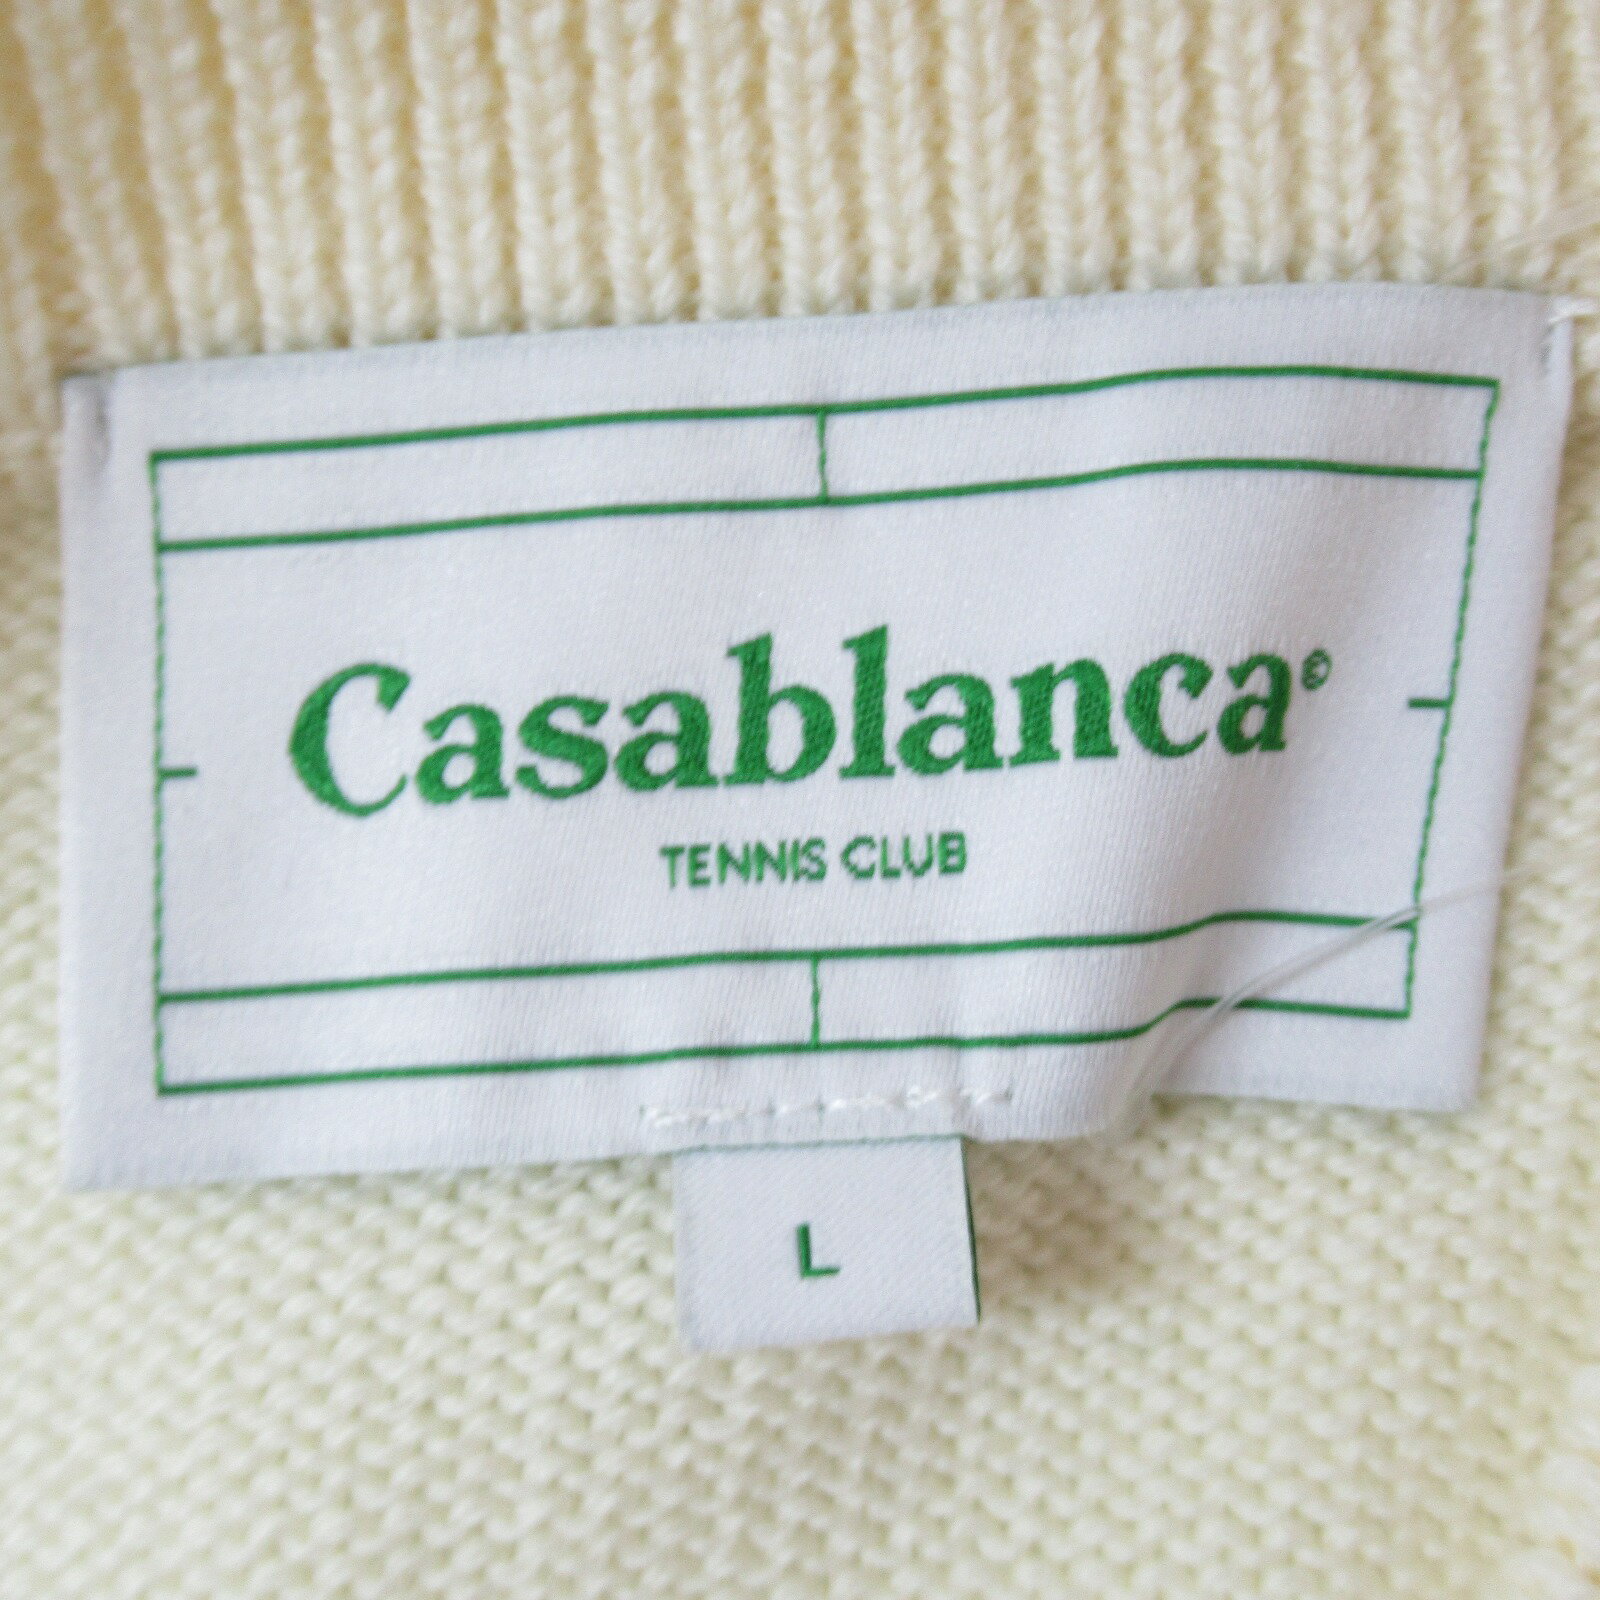 セレクション SELECTION カーサブランカセーター セーター 衣料品 トップス ウール レディース ベージュ系 ベージュ 【中古】 | 衣類 ブランド